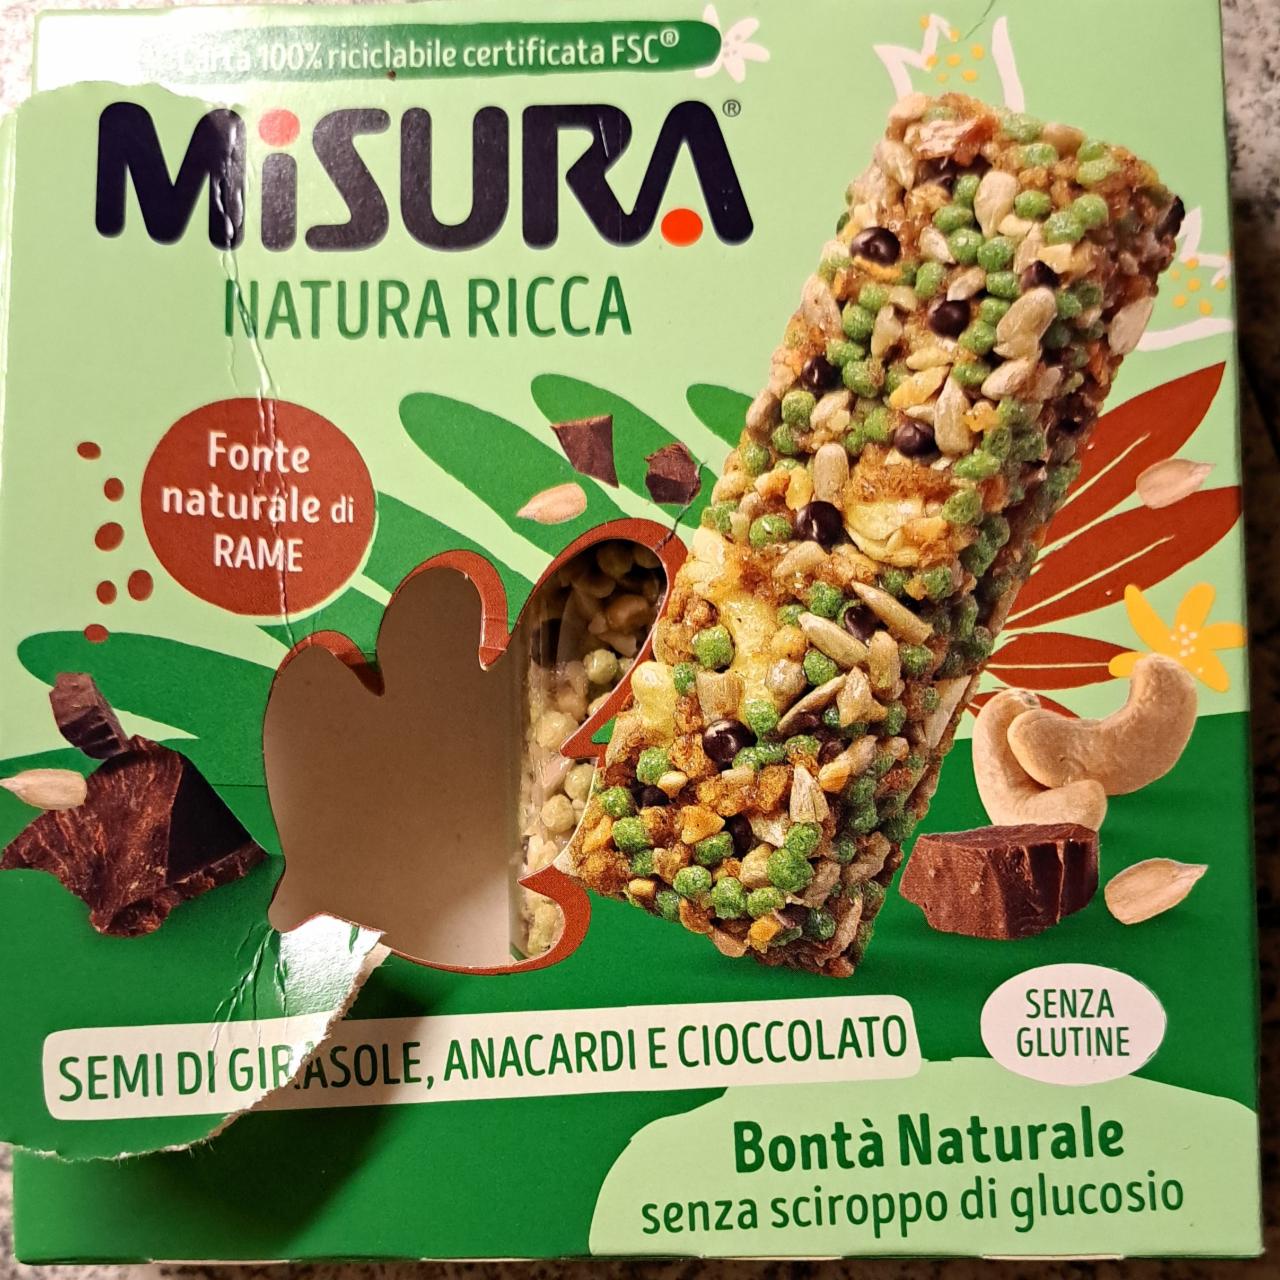 Fotografie - Natura Ricca Semi di Girasole, Anacardi e Cioccolato Misura